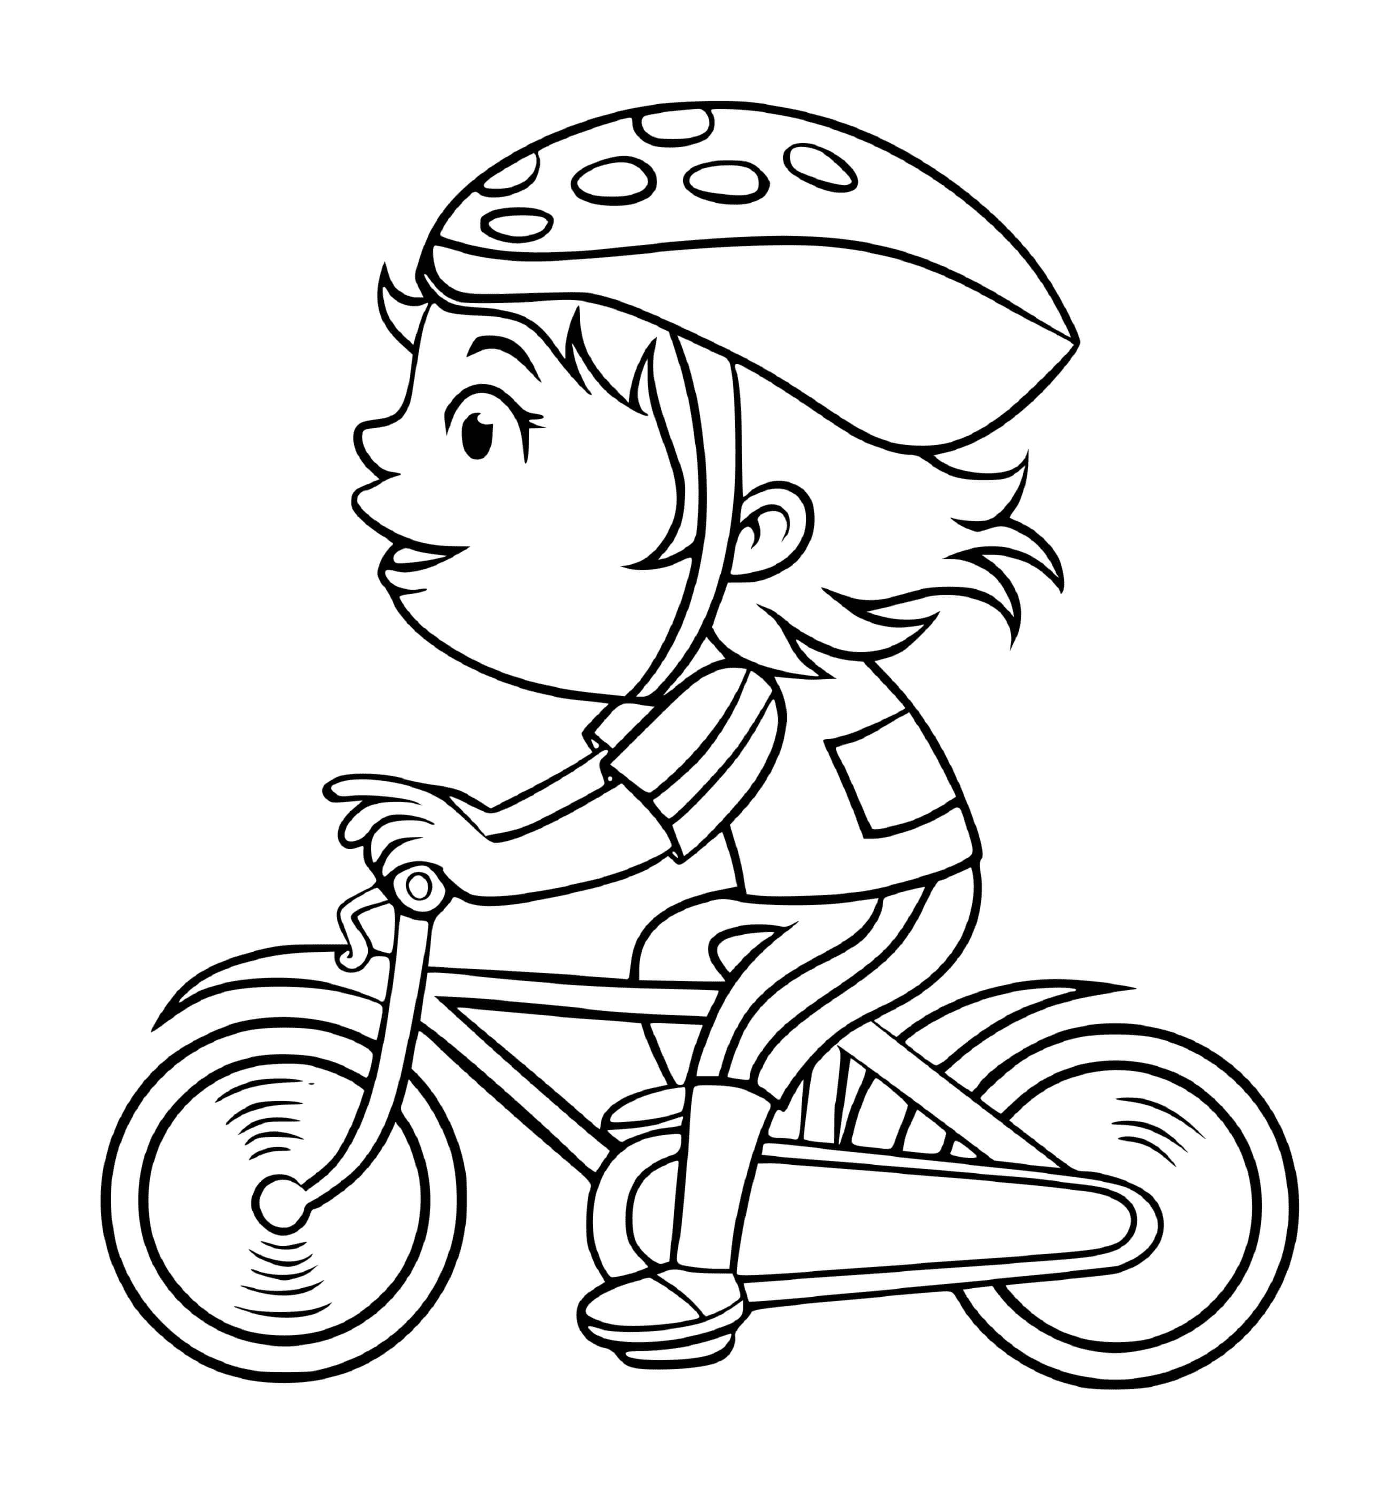  Una ragazza pedala veloce sulla sua bici 